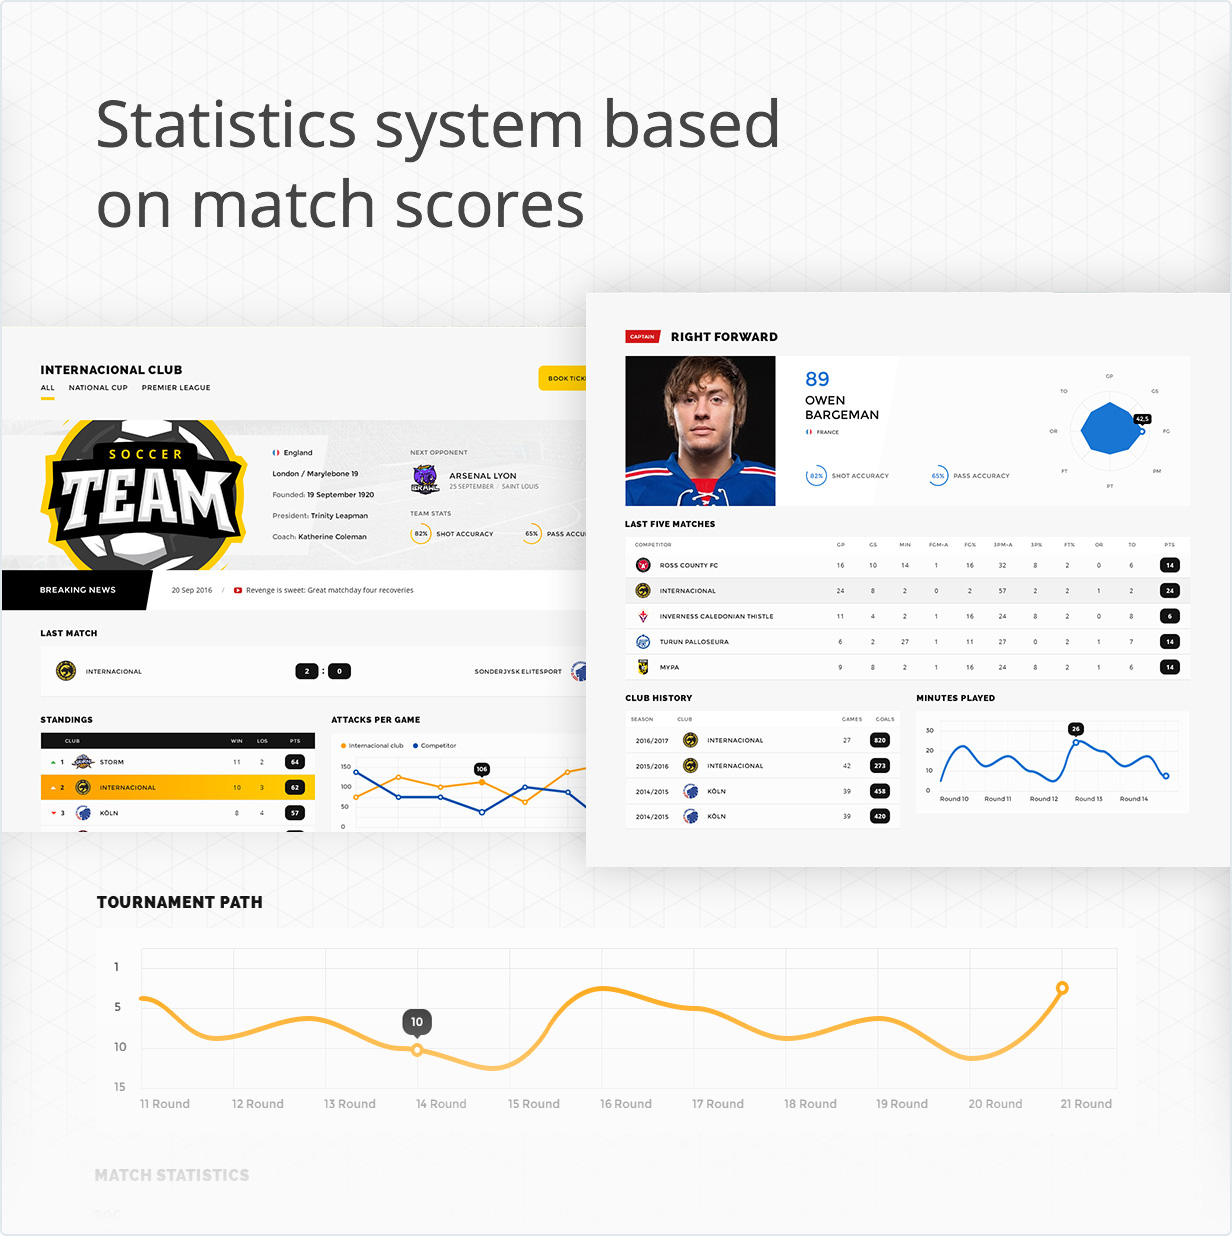 Statistic ststem based on match scores